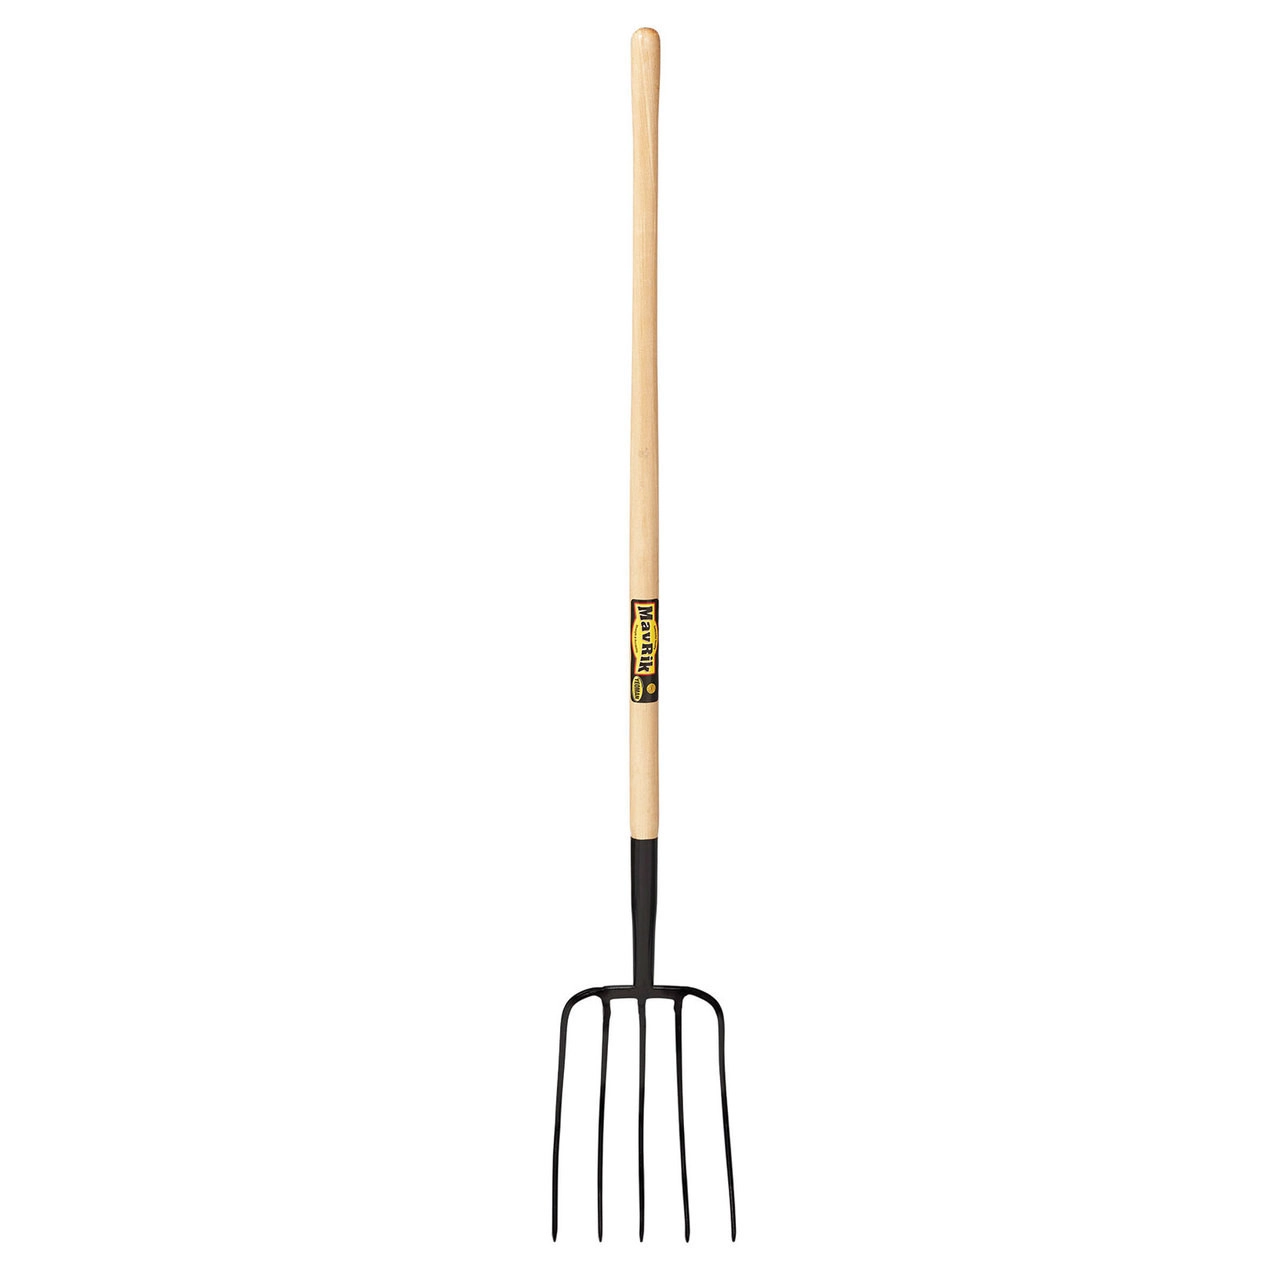 5 Tine Manure Fork 48” Wood Handle - Shovels & Scoops & Forks